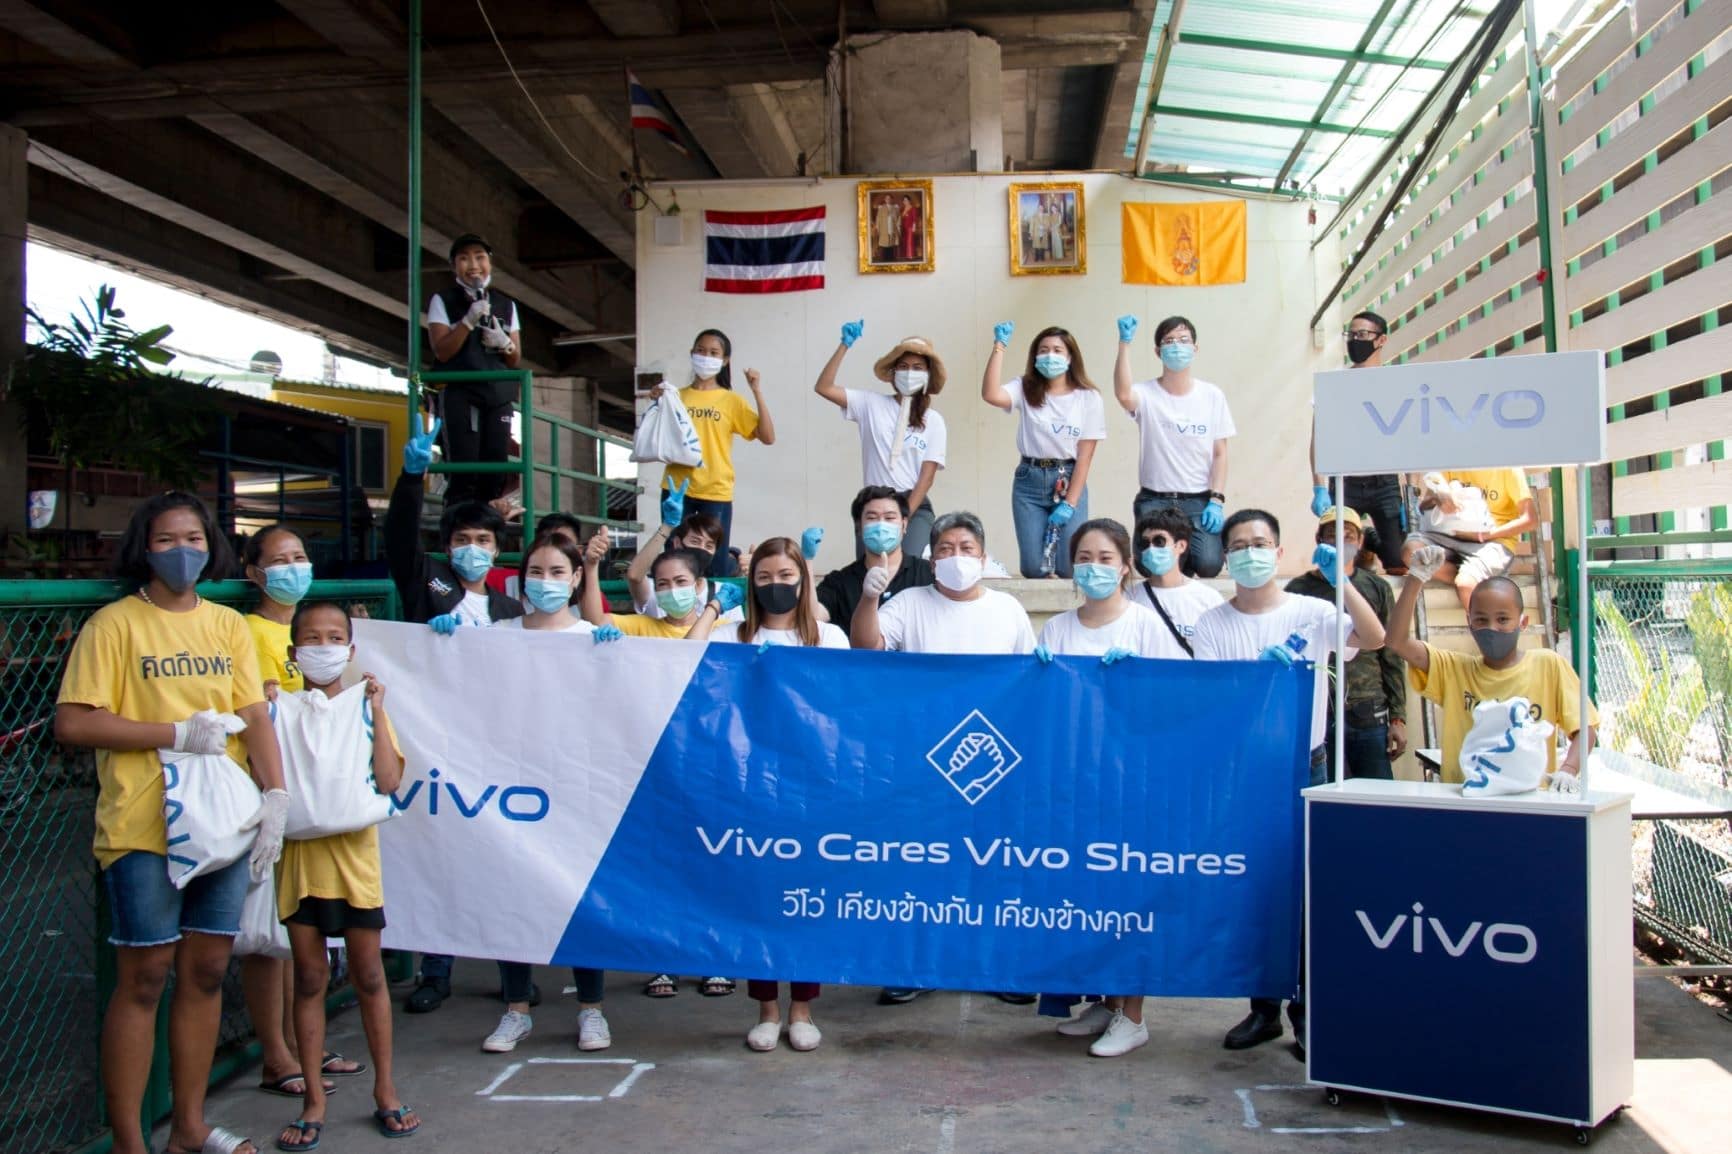 Vivo ผู้นำแบรนด์สมาร์ทโฟนระดับโลก จัดกิจกรรมเพื่อสังคม “Vivo Cares Vivo Shares เคียงข้างกัน เคียงข้างคุณ” นำทัพช่วยเหลือคนไทยทุกภูมิภาค แบ่งปันชาวไทยผู้ได้รับผลกระทบจาก Covid19 1